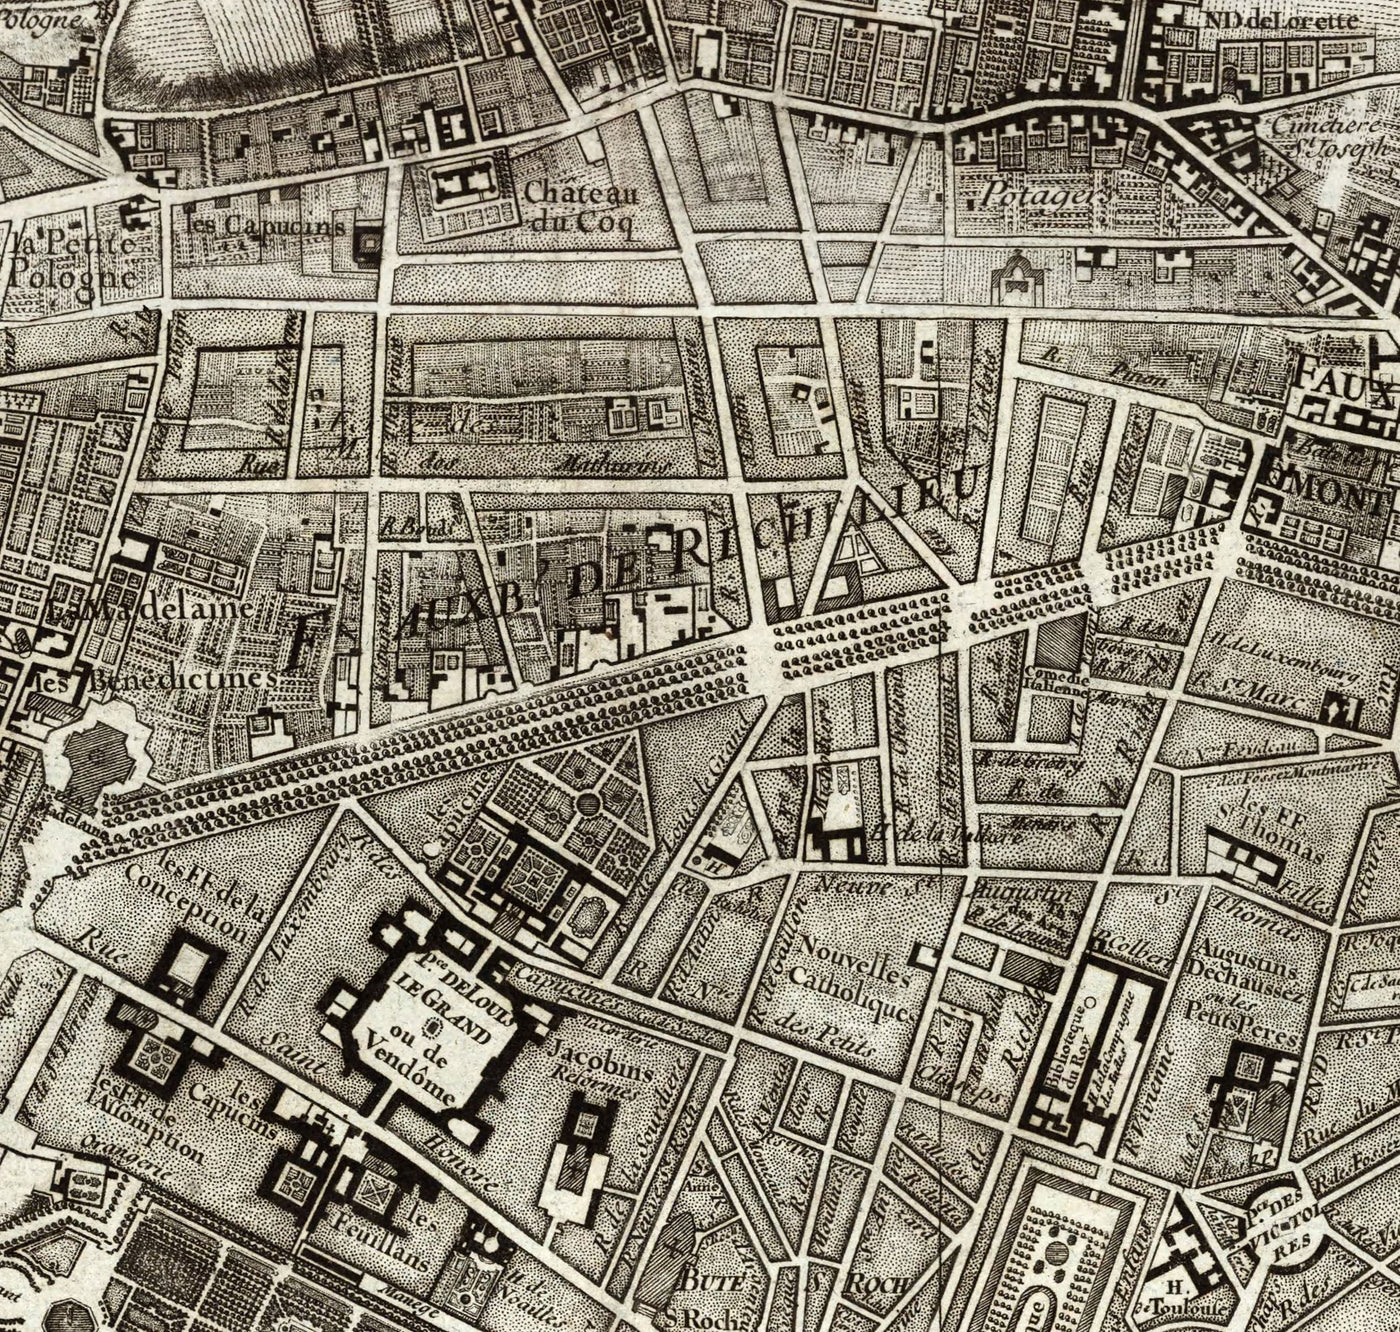 Seltene alte Karte von Paris, 1795 von Roussel - 18. Jahrhundert Louvre, Les Invalides, Champs-Élysées